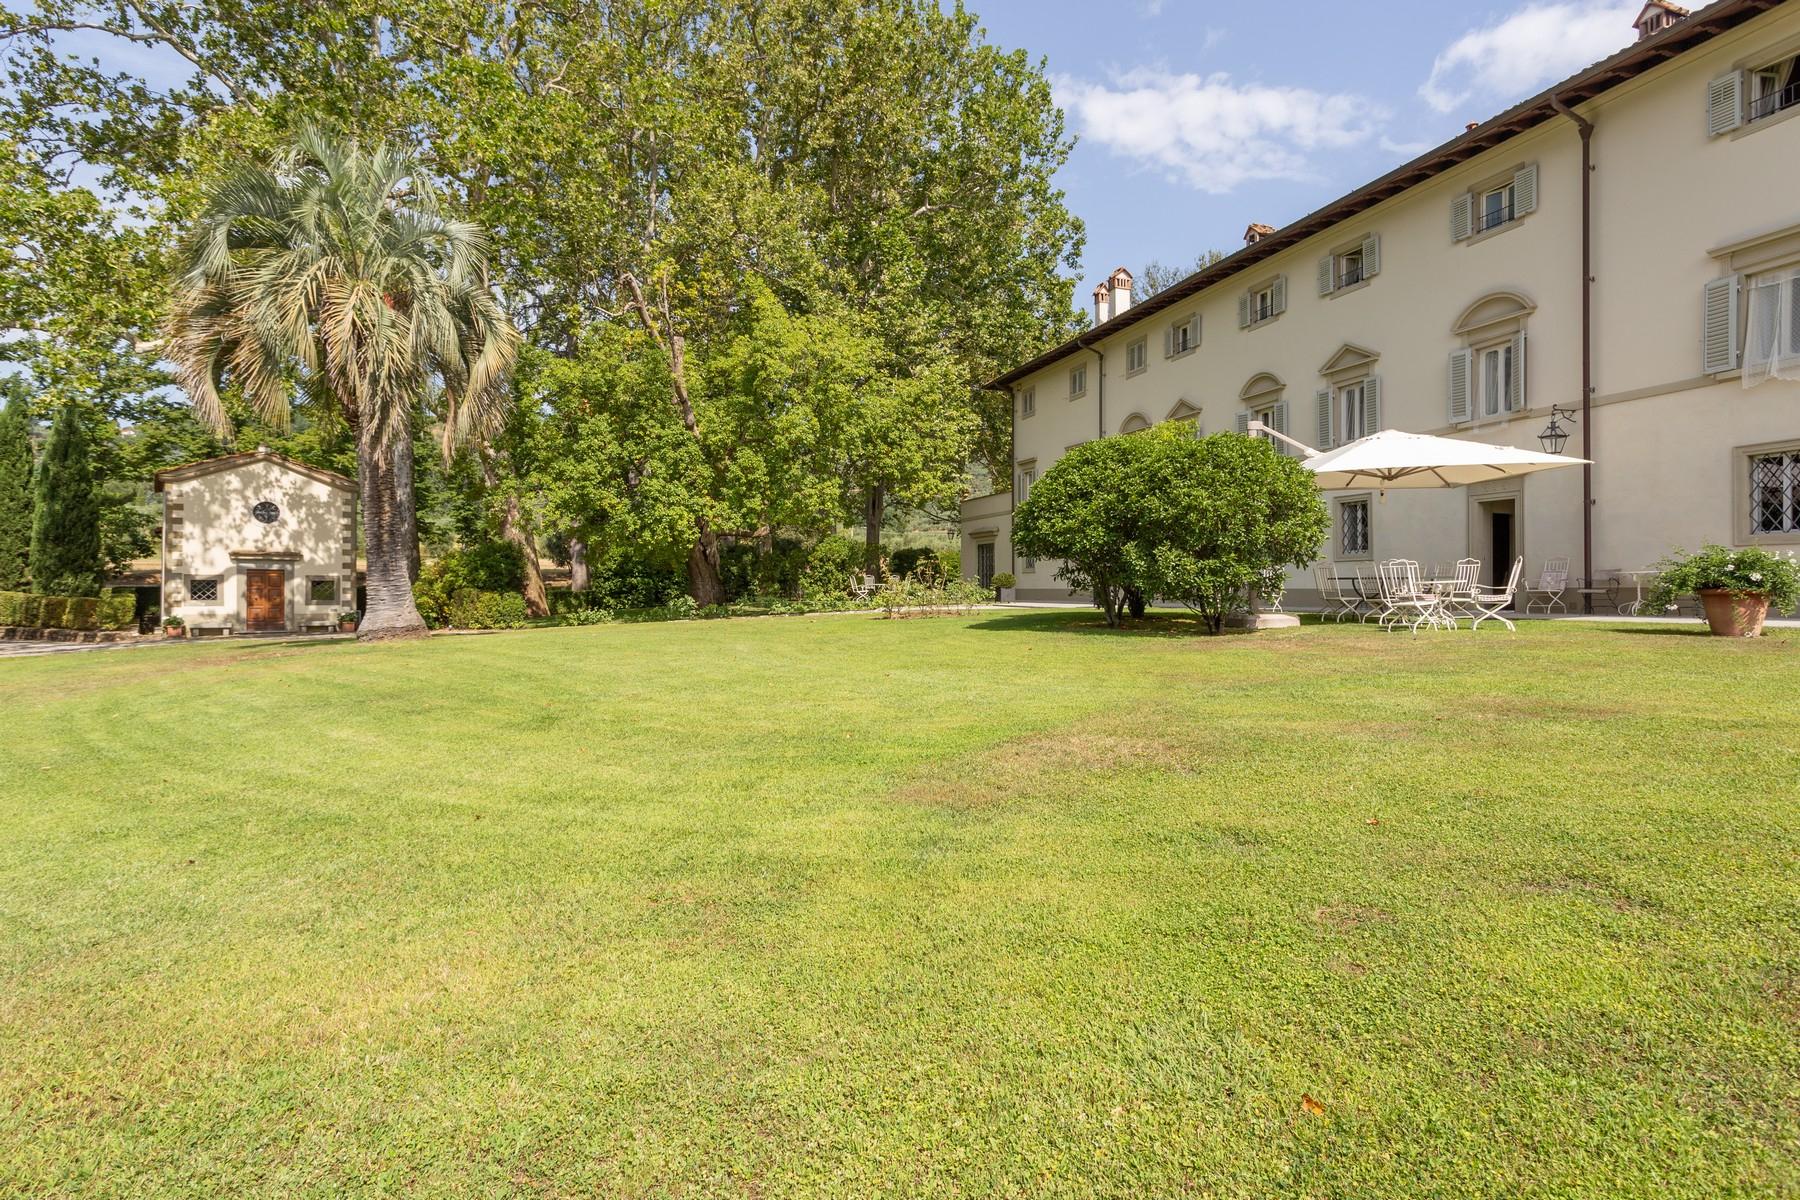 Prestigious luxury villa on the hills of Montecatini - 18